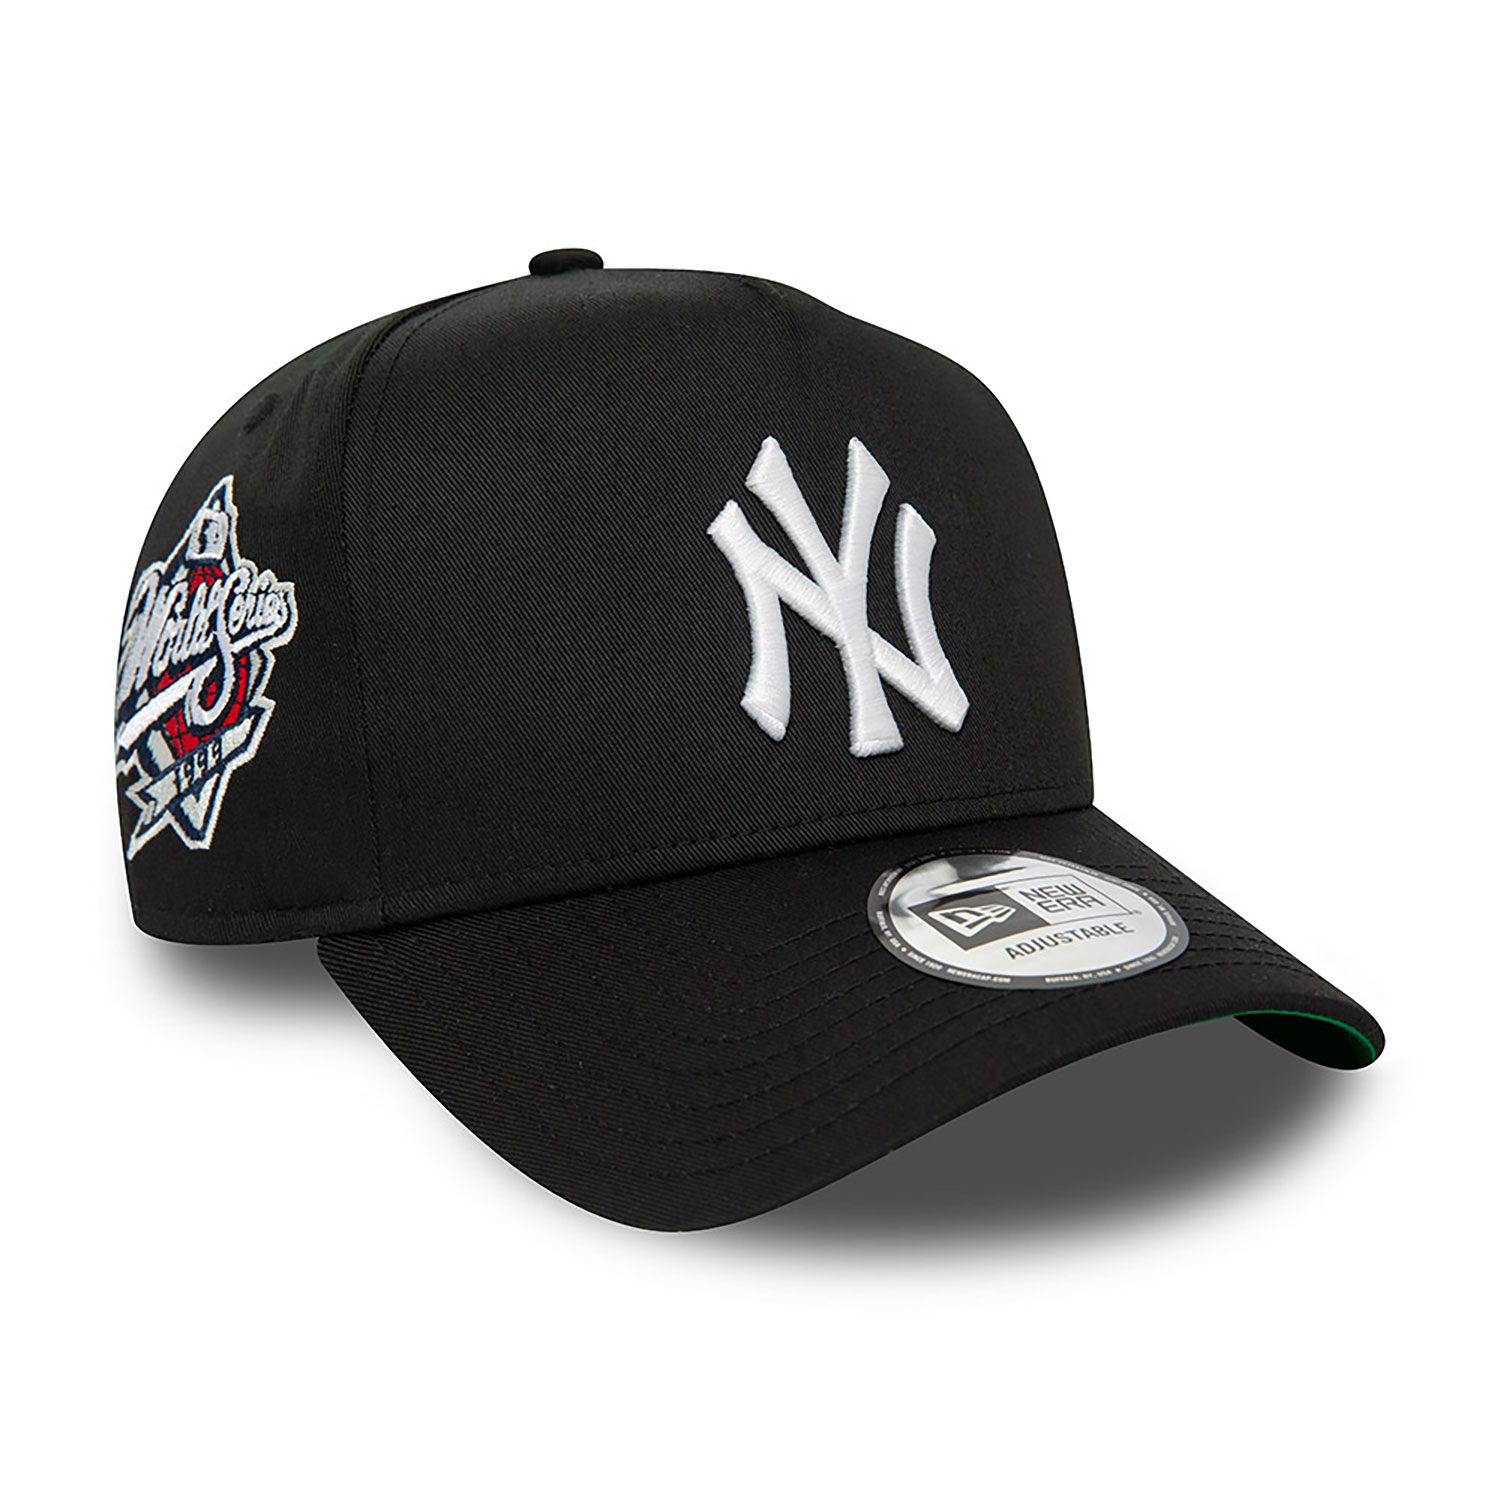 NY Cap Black | Black Yankees Cap | New Era Cap PT